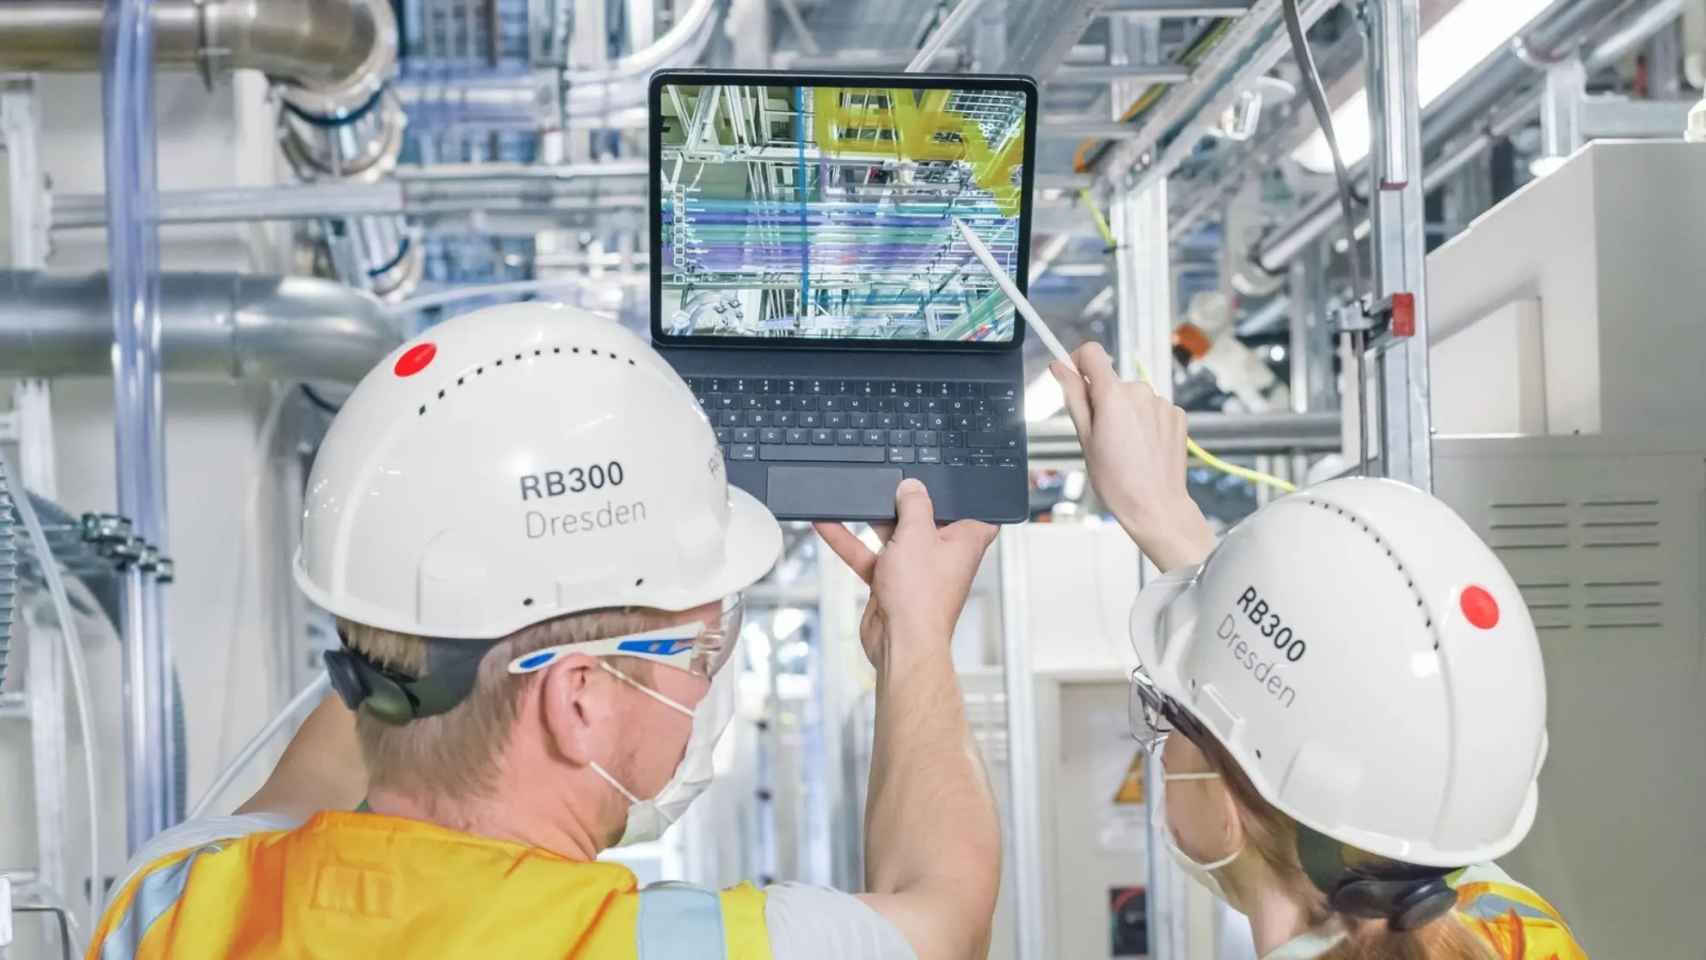 Los gemelos digitales del edificio ayudan al personal a identificar rápidamente cada sensor en la fábrica conectada.